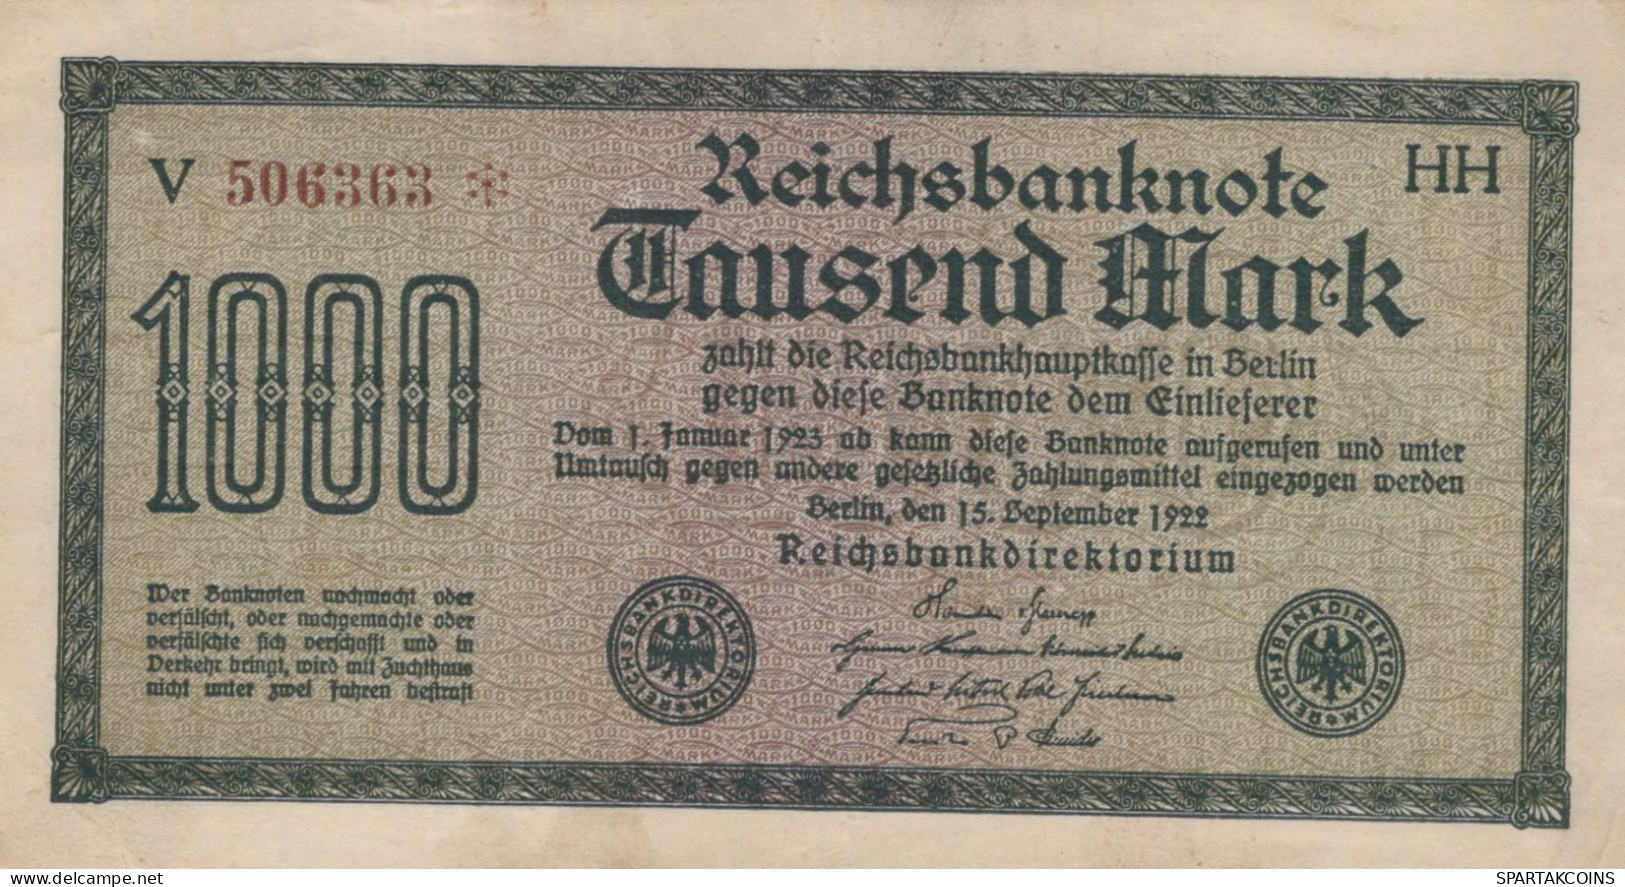 1000 MARK 1922 Stadt BERLIN DEUTSCHLAND Papiergeld Banknote #PL400 - [11] Emissions Locales